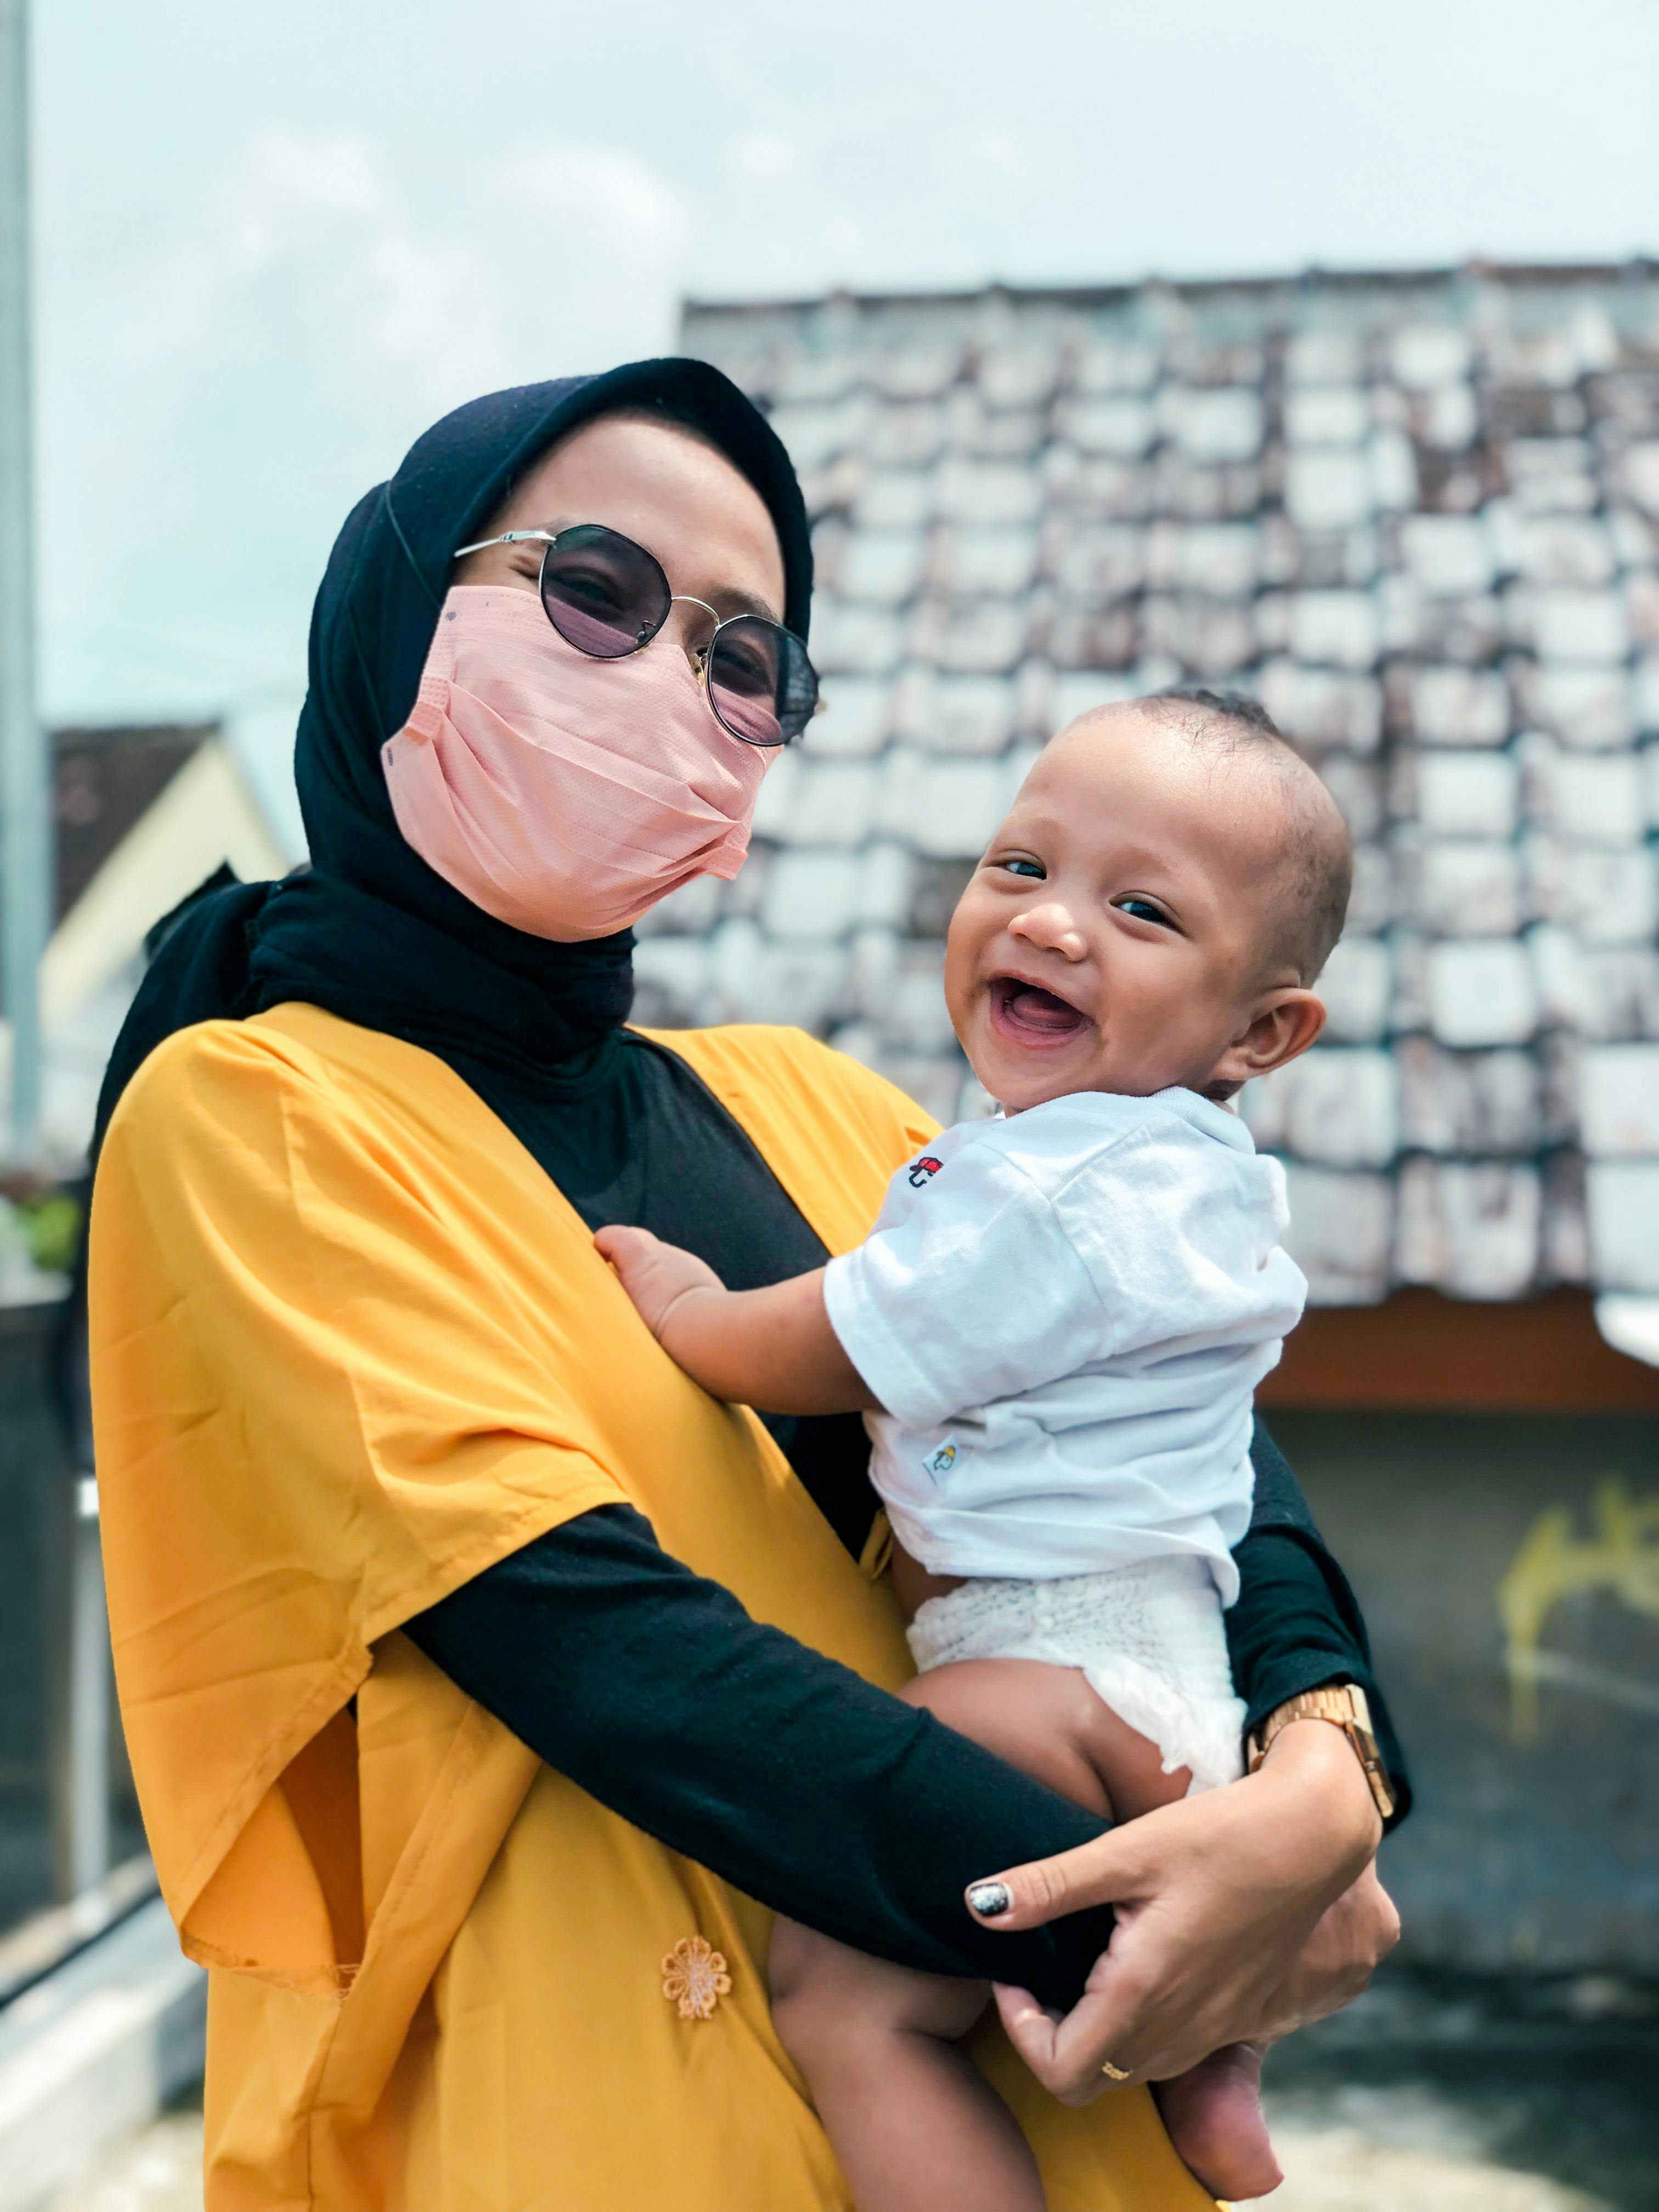 Eine Frau, die eine Maske trägt und ein lächelndes Baby hält | Quelle: Pexels